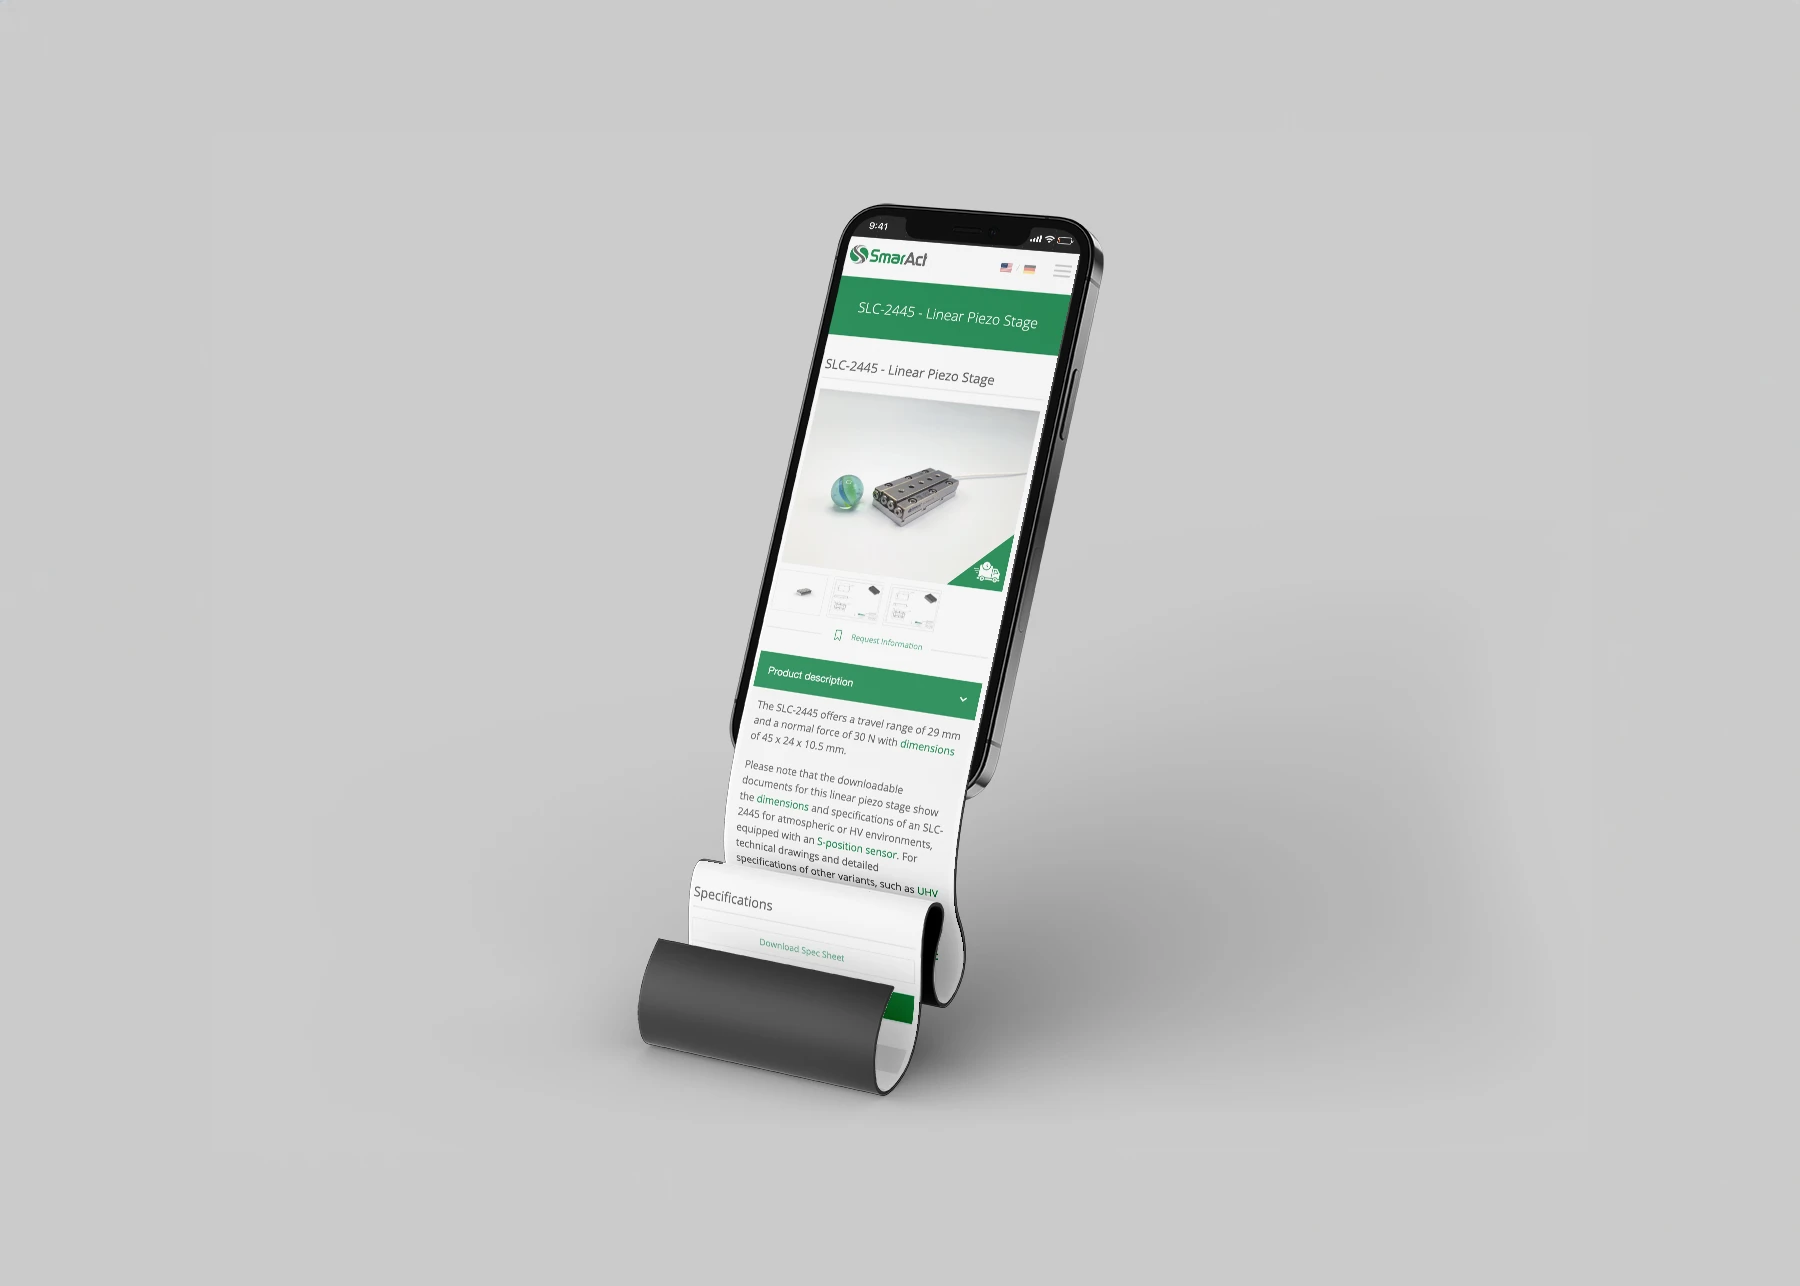 Vorschaubild der Produktseite von SmarAct in der mobilen Version